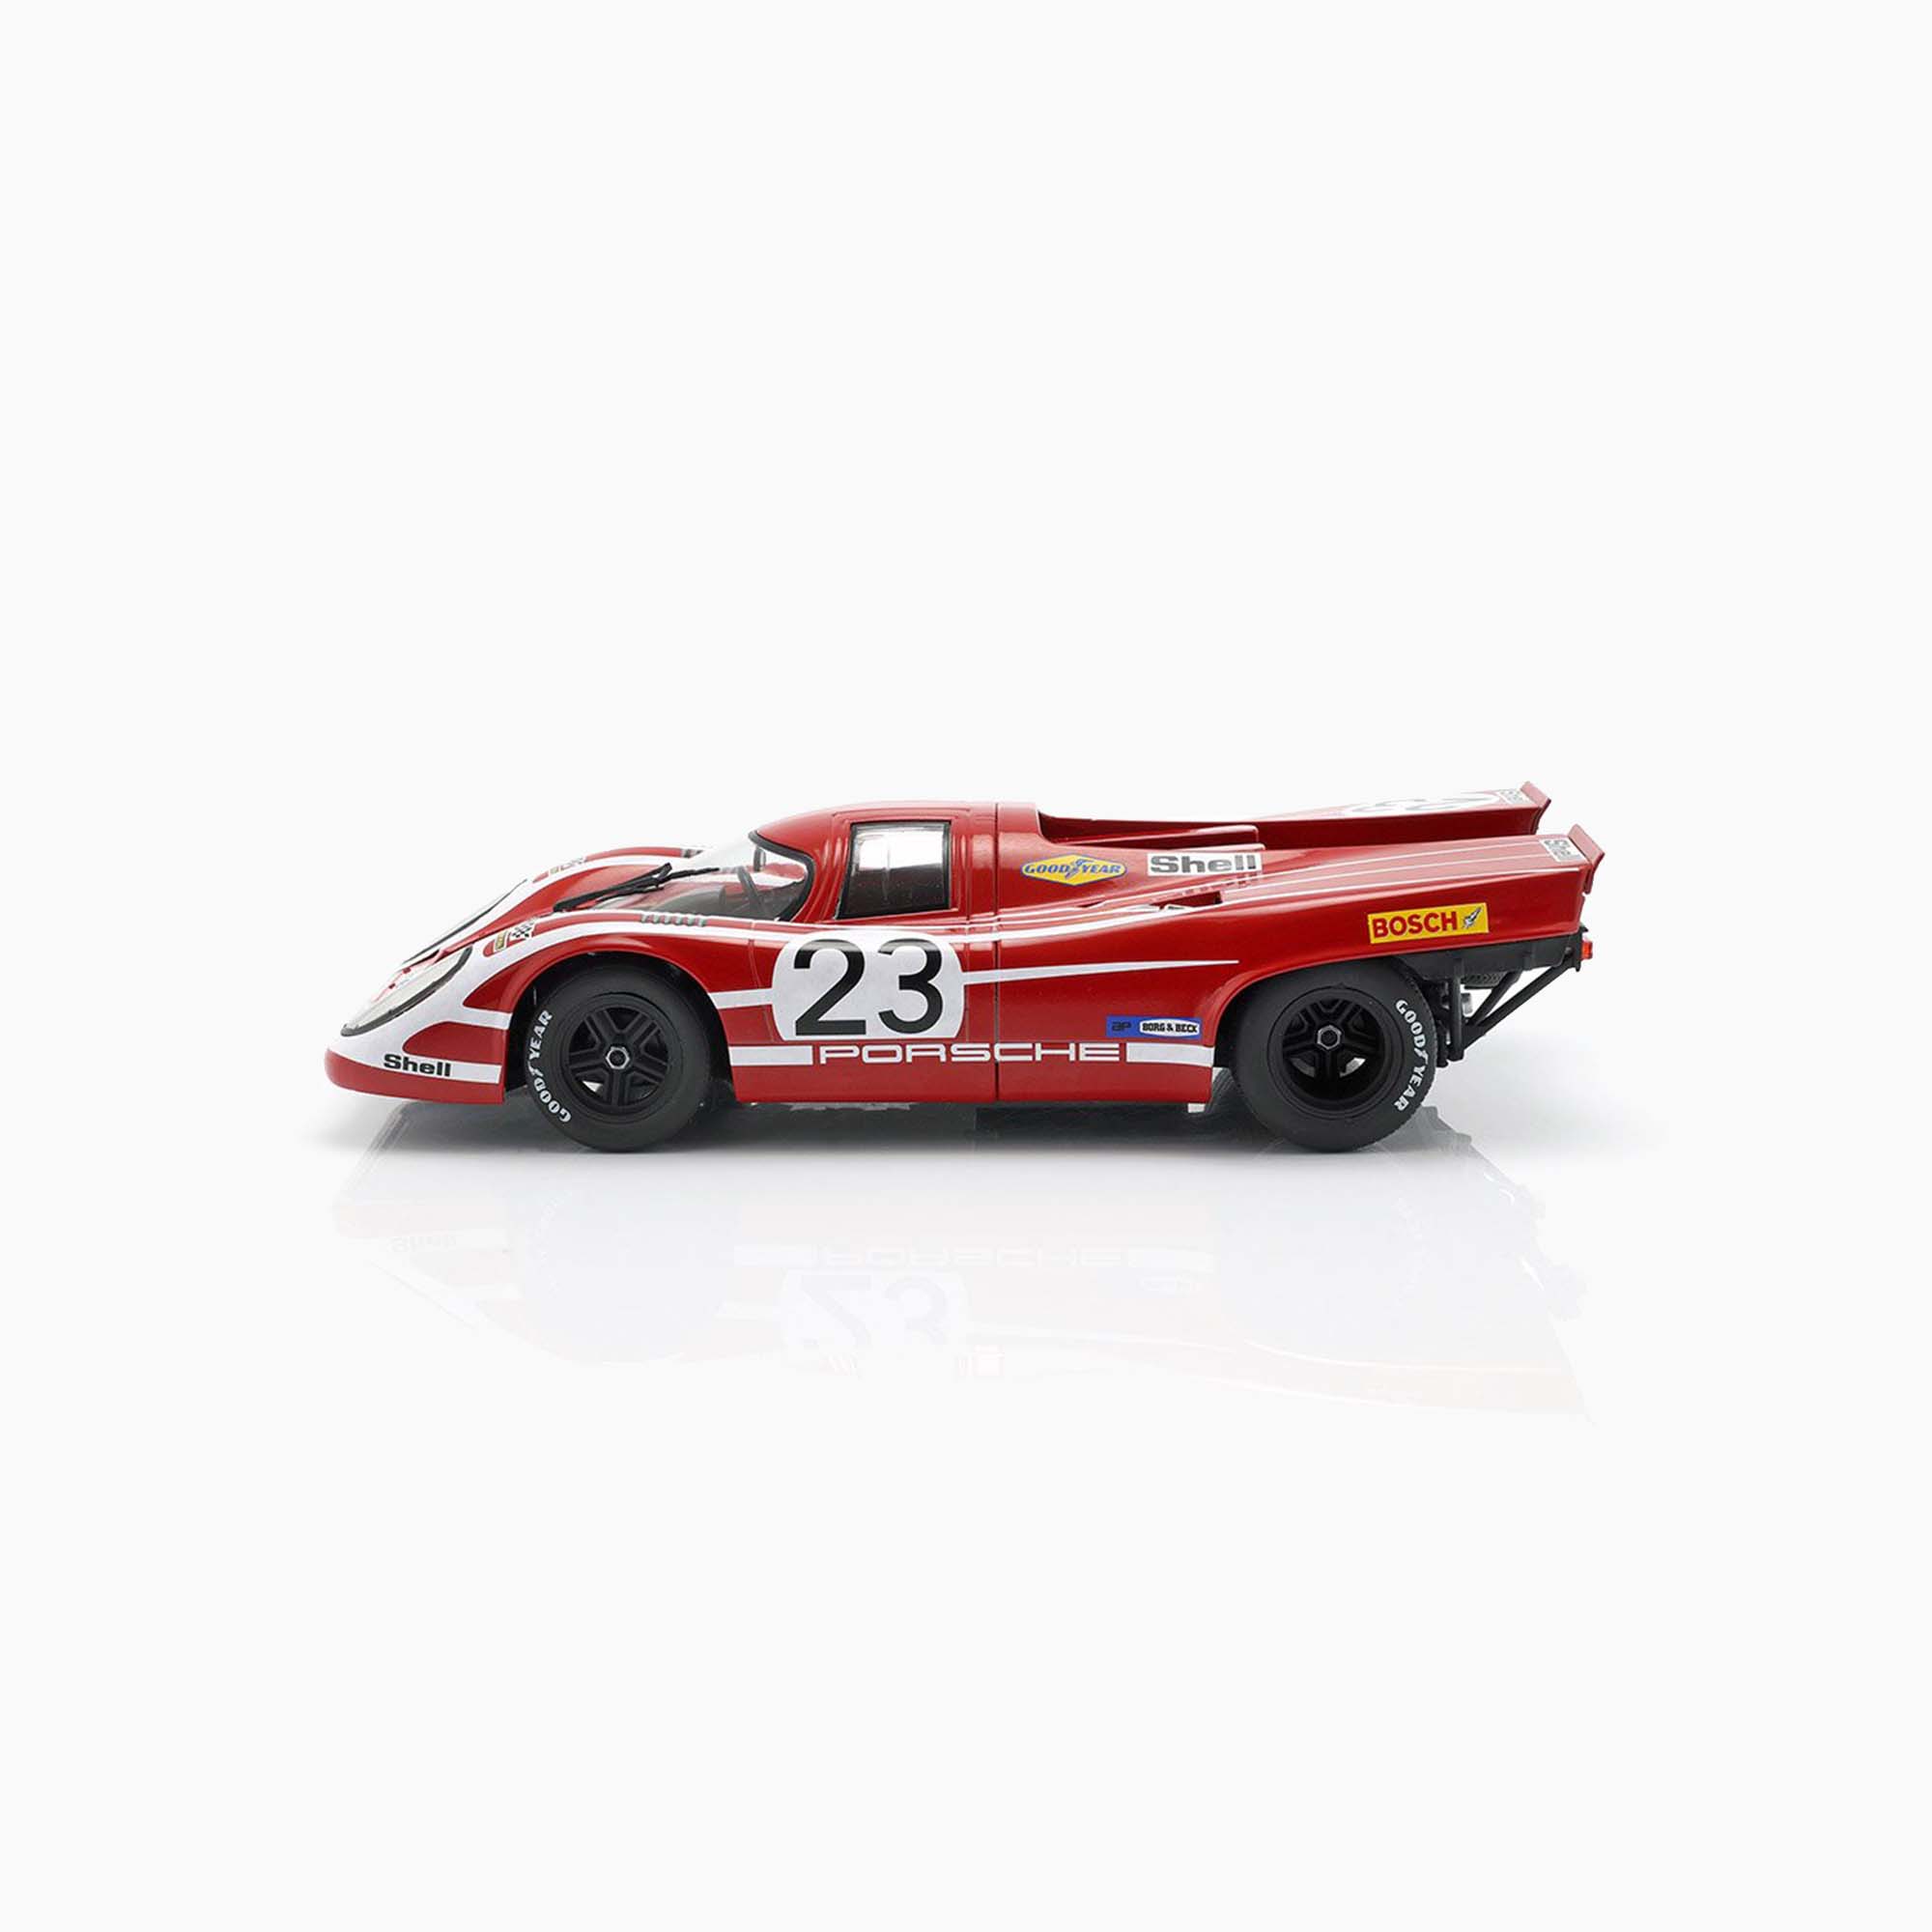 Porsche 917 K No.23 Winner 24 H Le Mans 1970 | 1:18 Scale Model-1:18 Scale Model-Spark Models-gpx-store